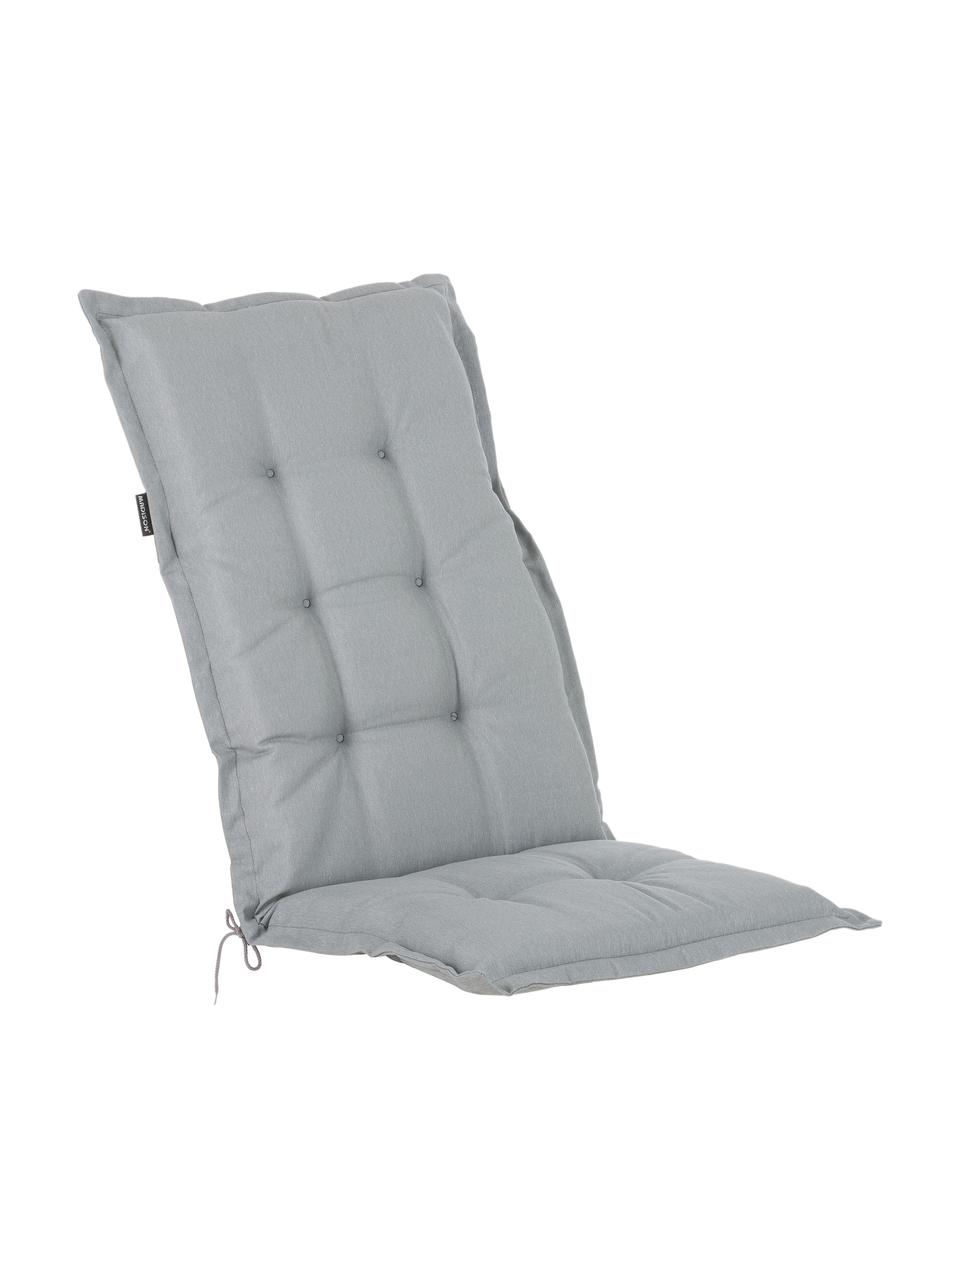 Einfarbige Hochlehner-Stuhlauflage Panama in Hellgrau, Bezug: 50% Baumwolle, 50% Polyes, Hellgrau, B 42 x L 120 cm